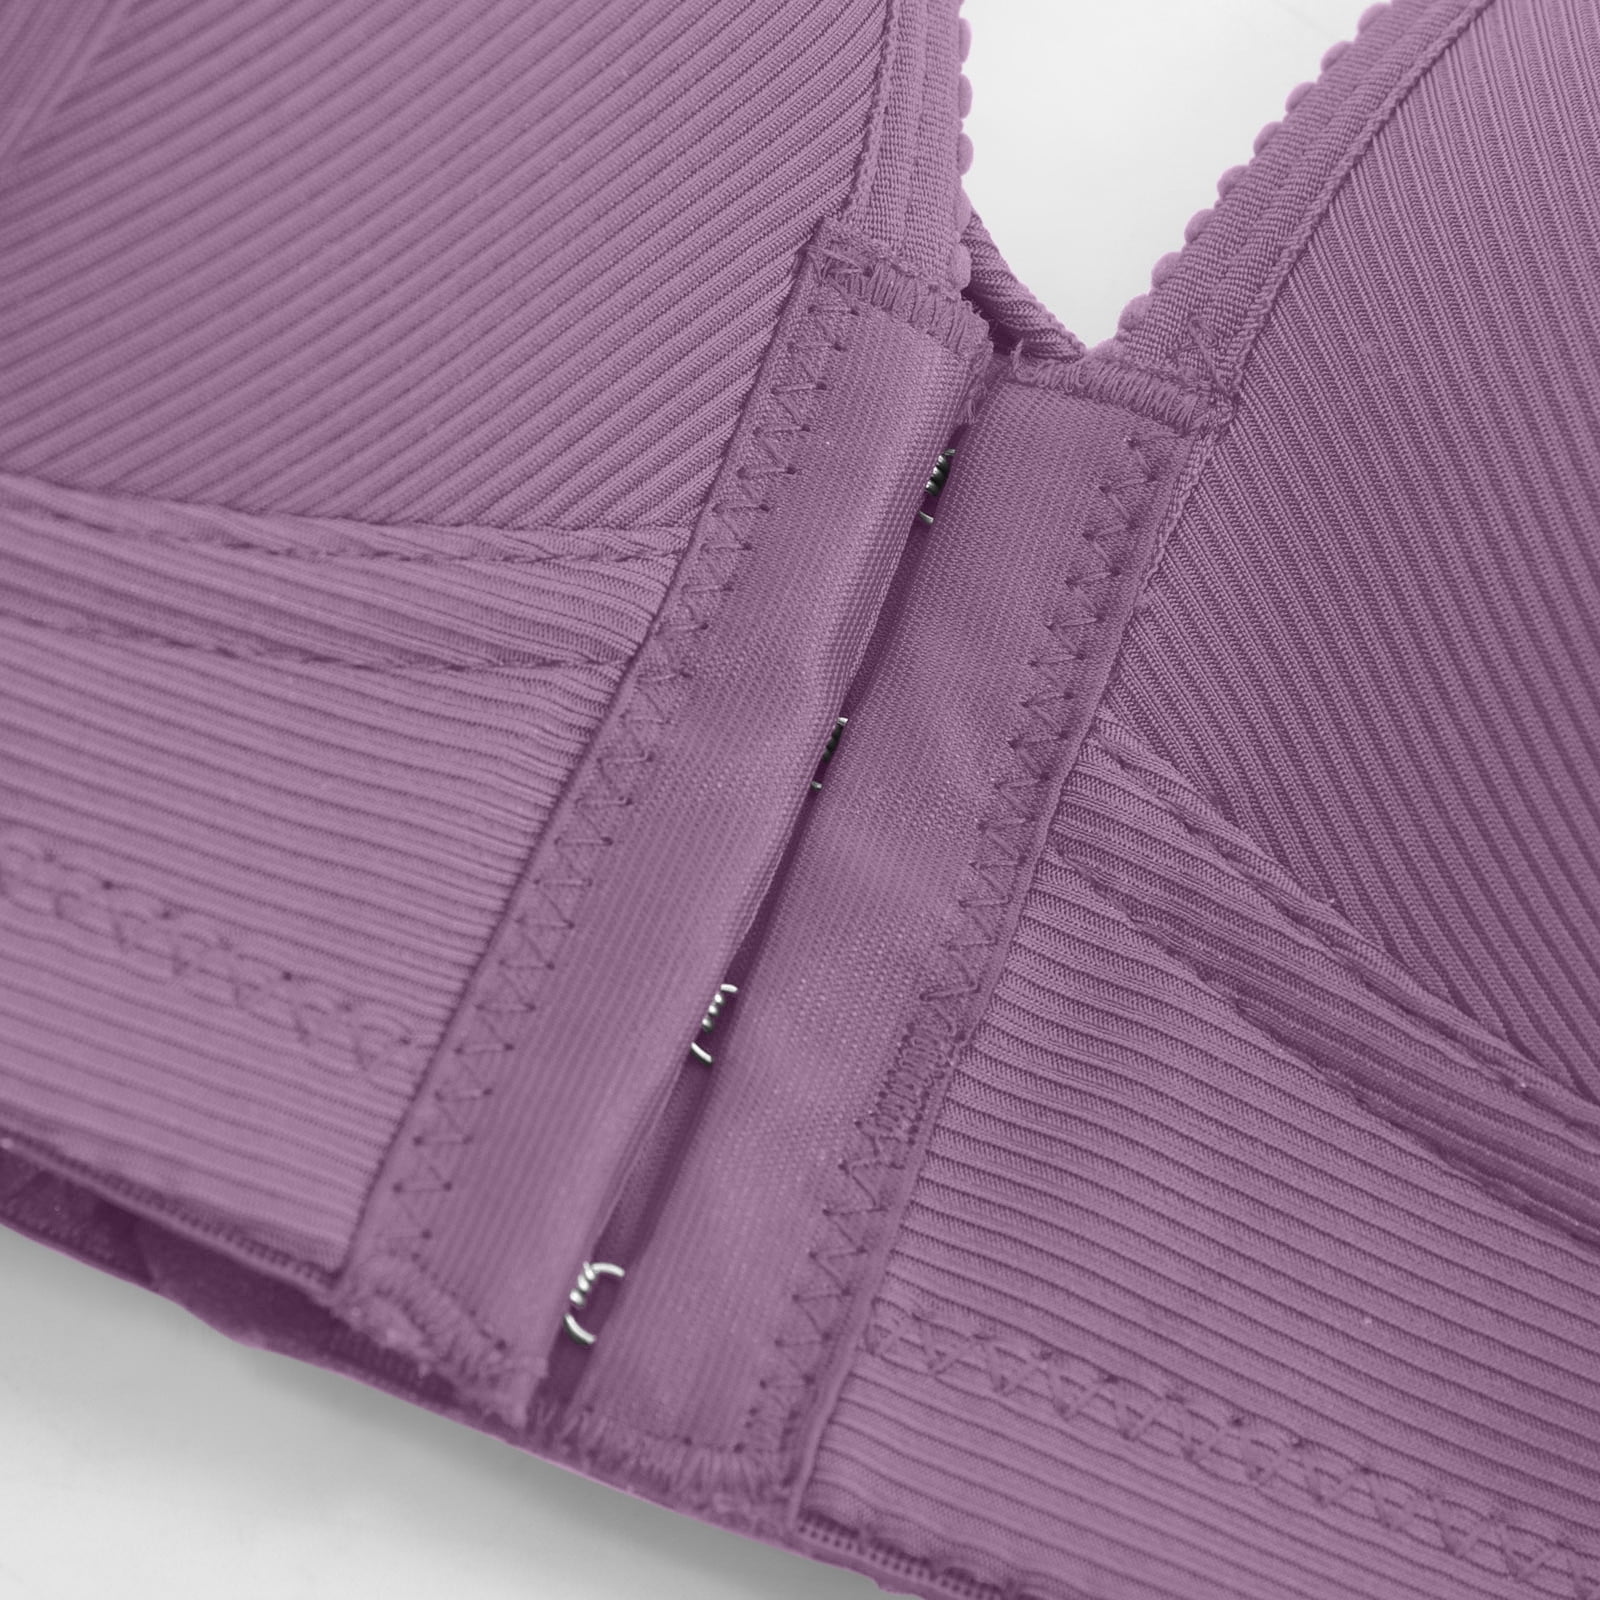 YOTAMI Women's Wire Free Comfortable Bra - Solid Underwear One-Piece Bra  Everyday Underwear - Push Up Bras with Comfy Support Purple 3XL